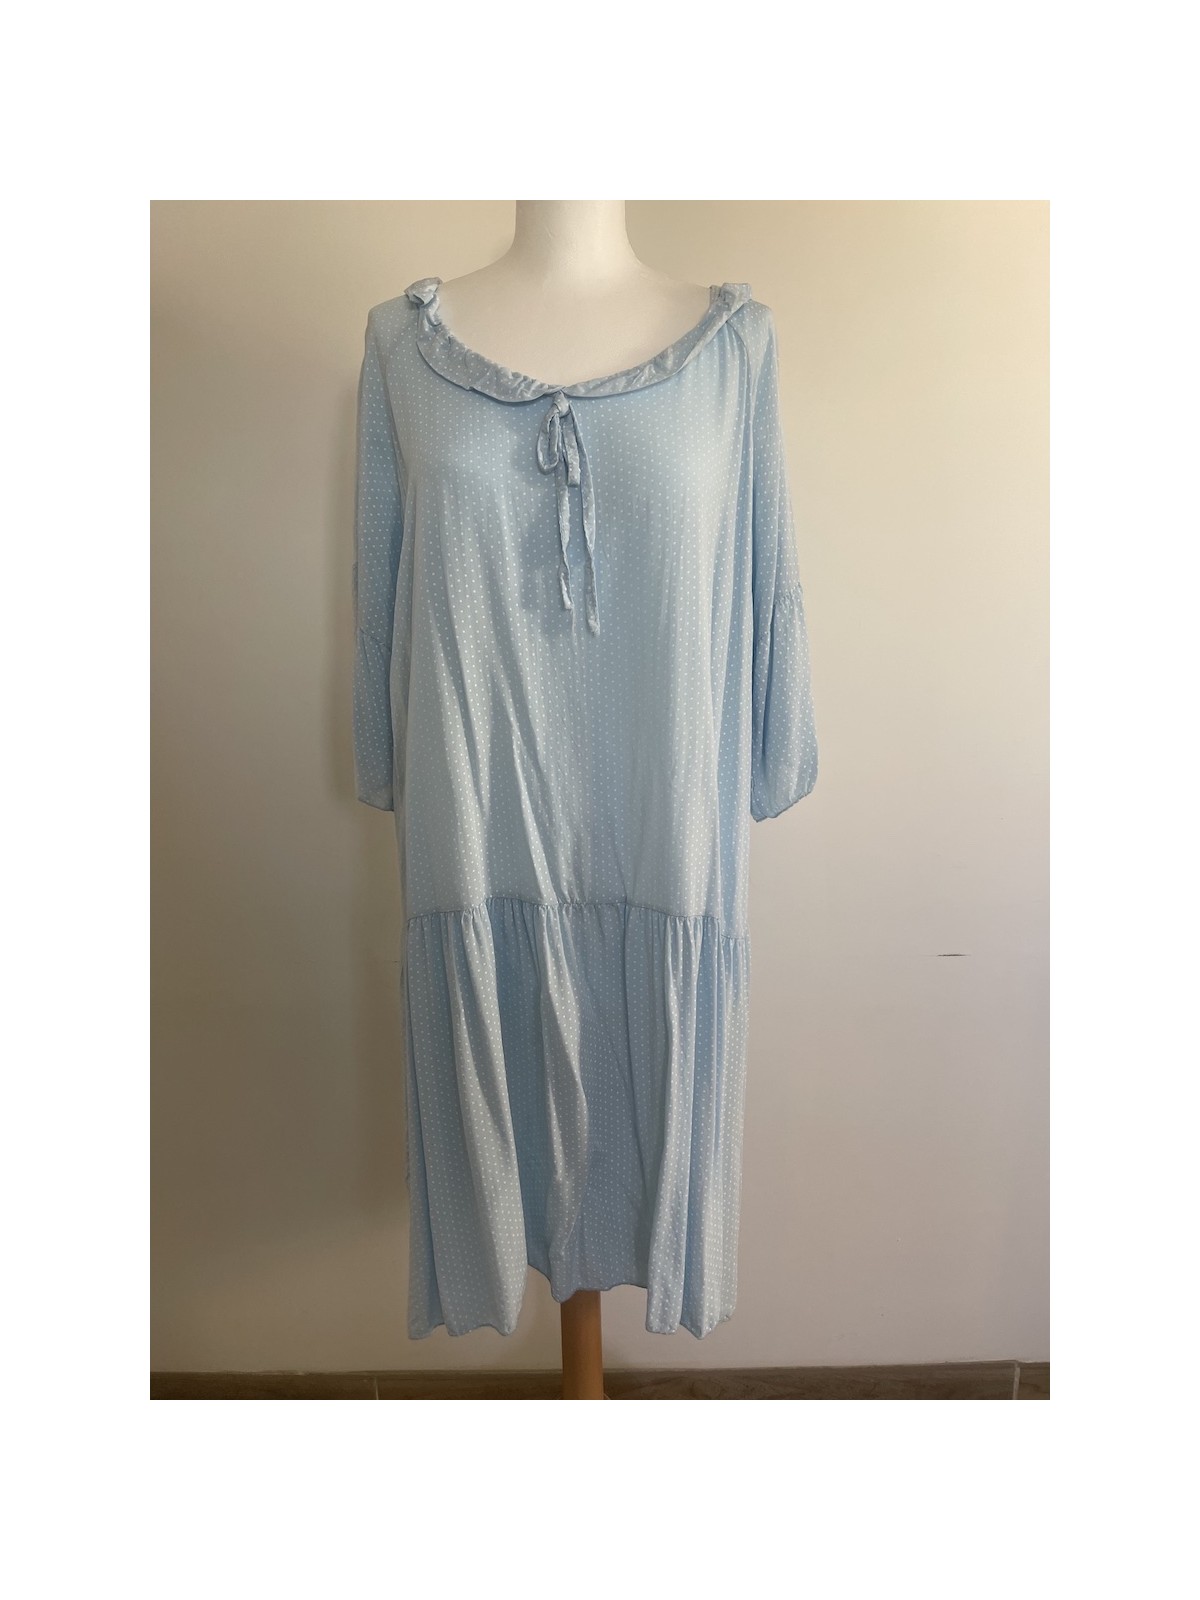 Robe tunique bleu à poids blancs l 1 vue de face l Tilleulmenthe mode boutique de vêtements femme en ligne